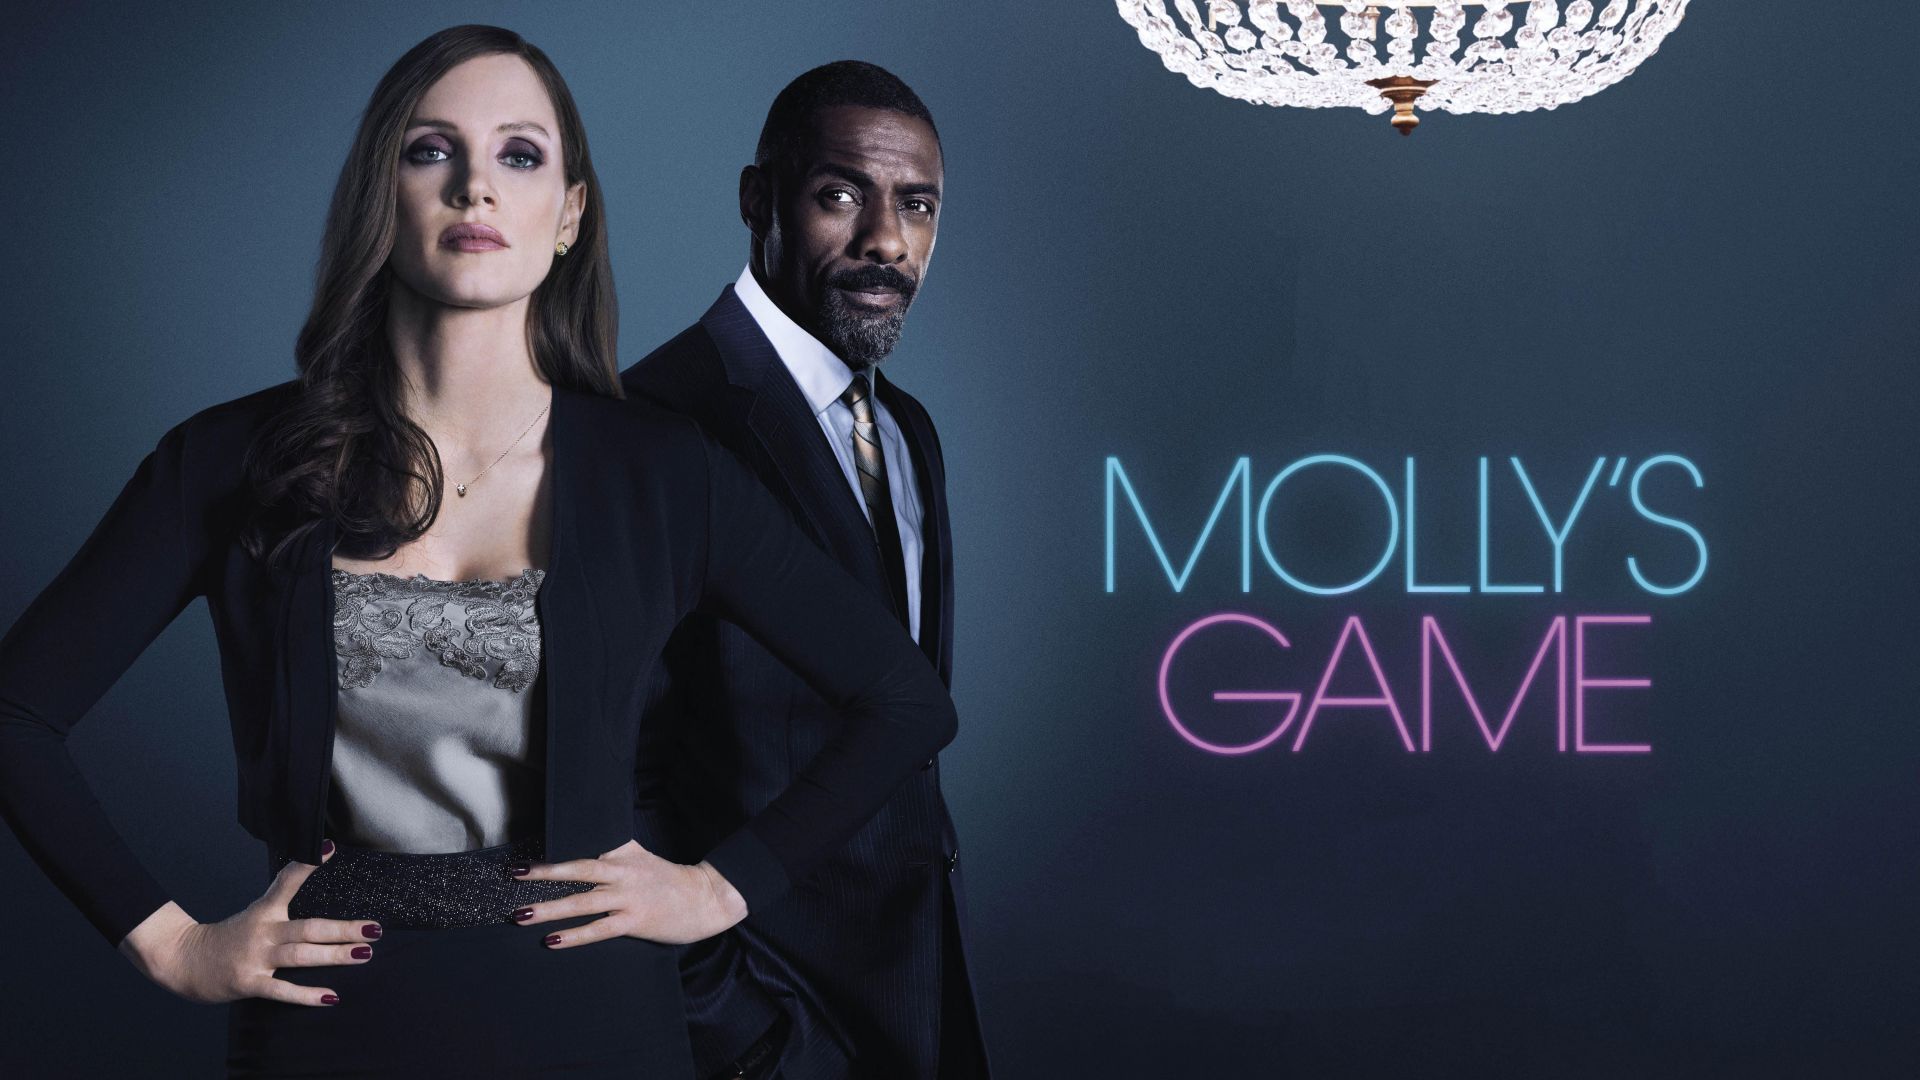 Игра Молли, Molly's Game, Jessica Chastain, Idris Elba, 5k (horizontal)